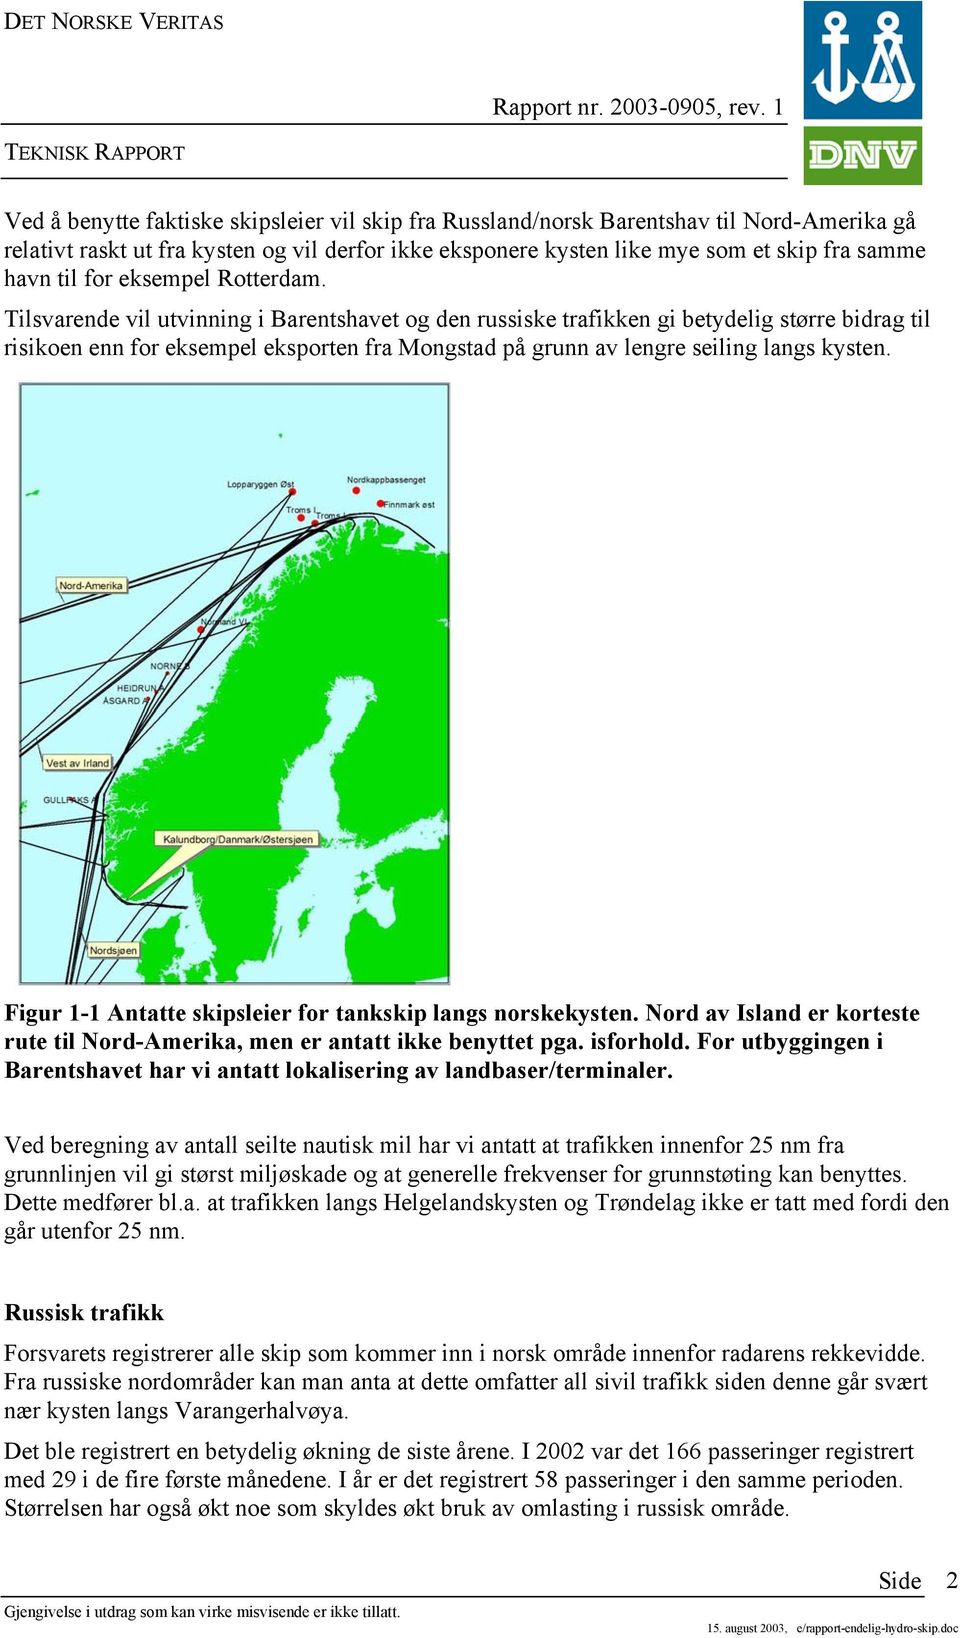 Tilsvarende vil utvinning i Barentshavet og den russiske trafikken gi betydelig større bidrag til risikoen enn for eksempel eksporten fra Mongstad på grunn av lengre seiling langs kysten.